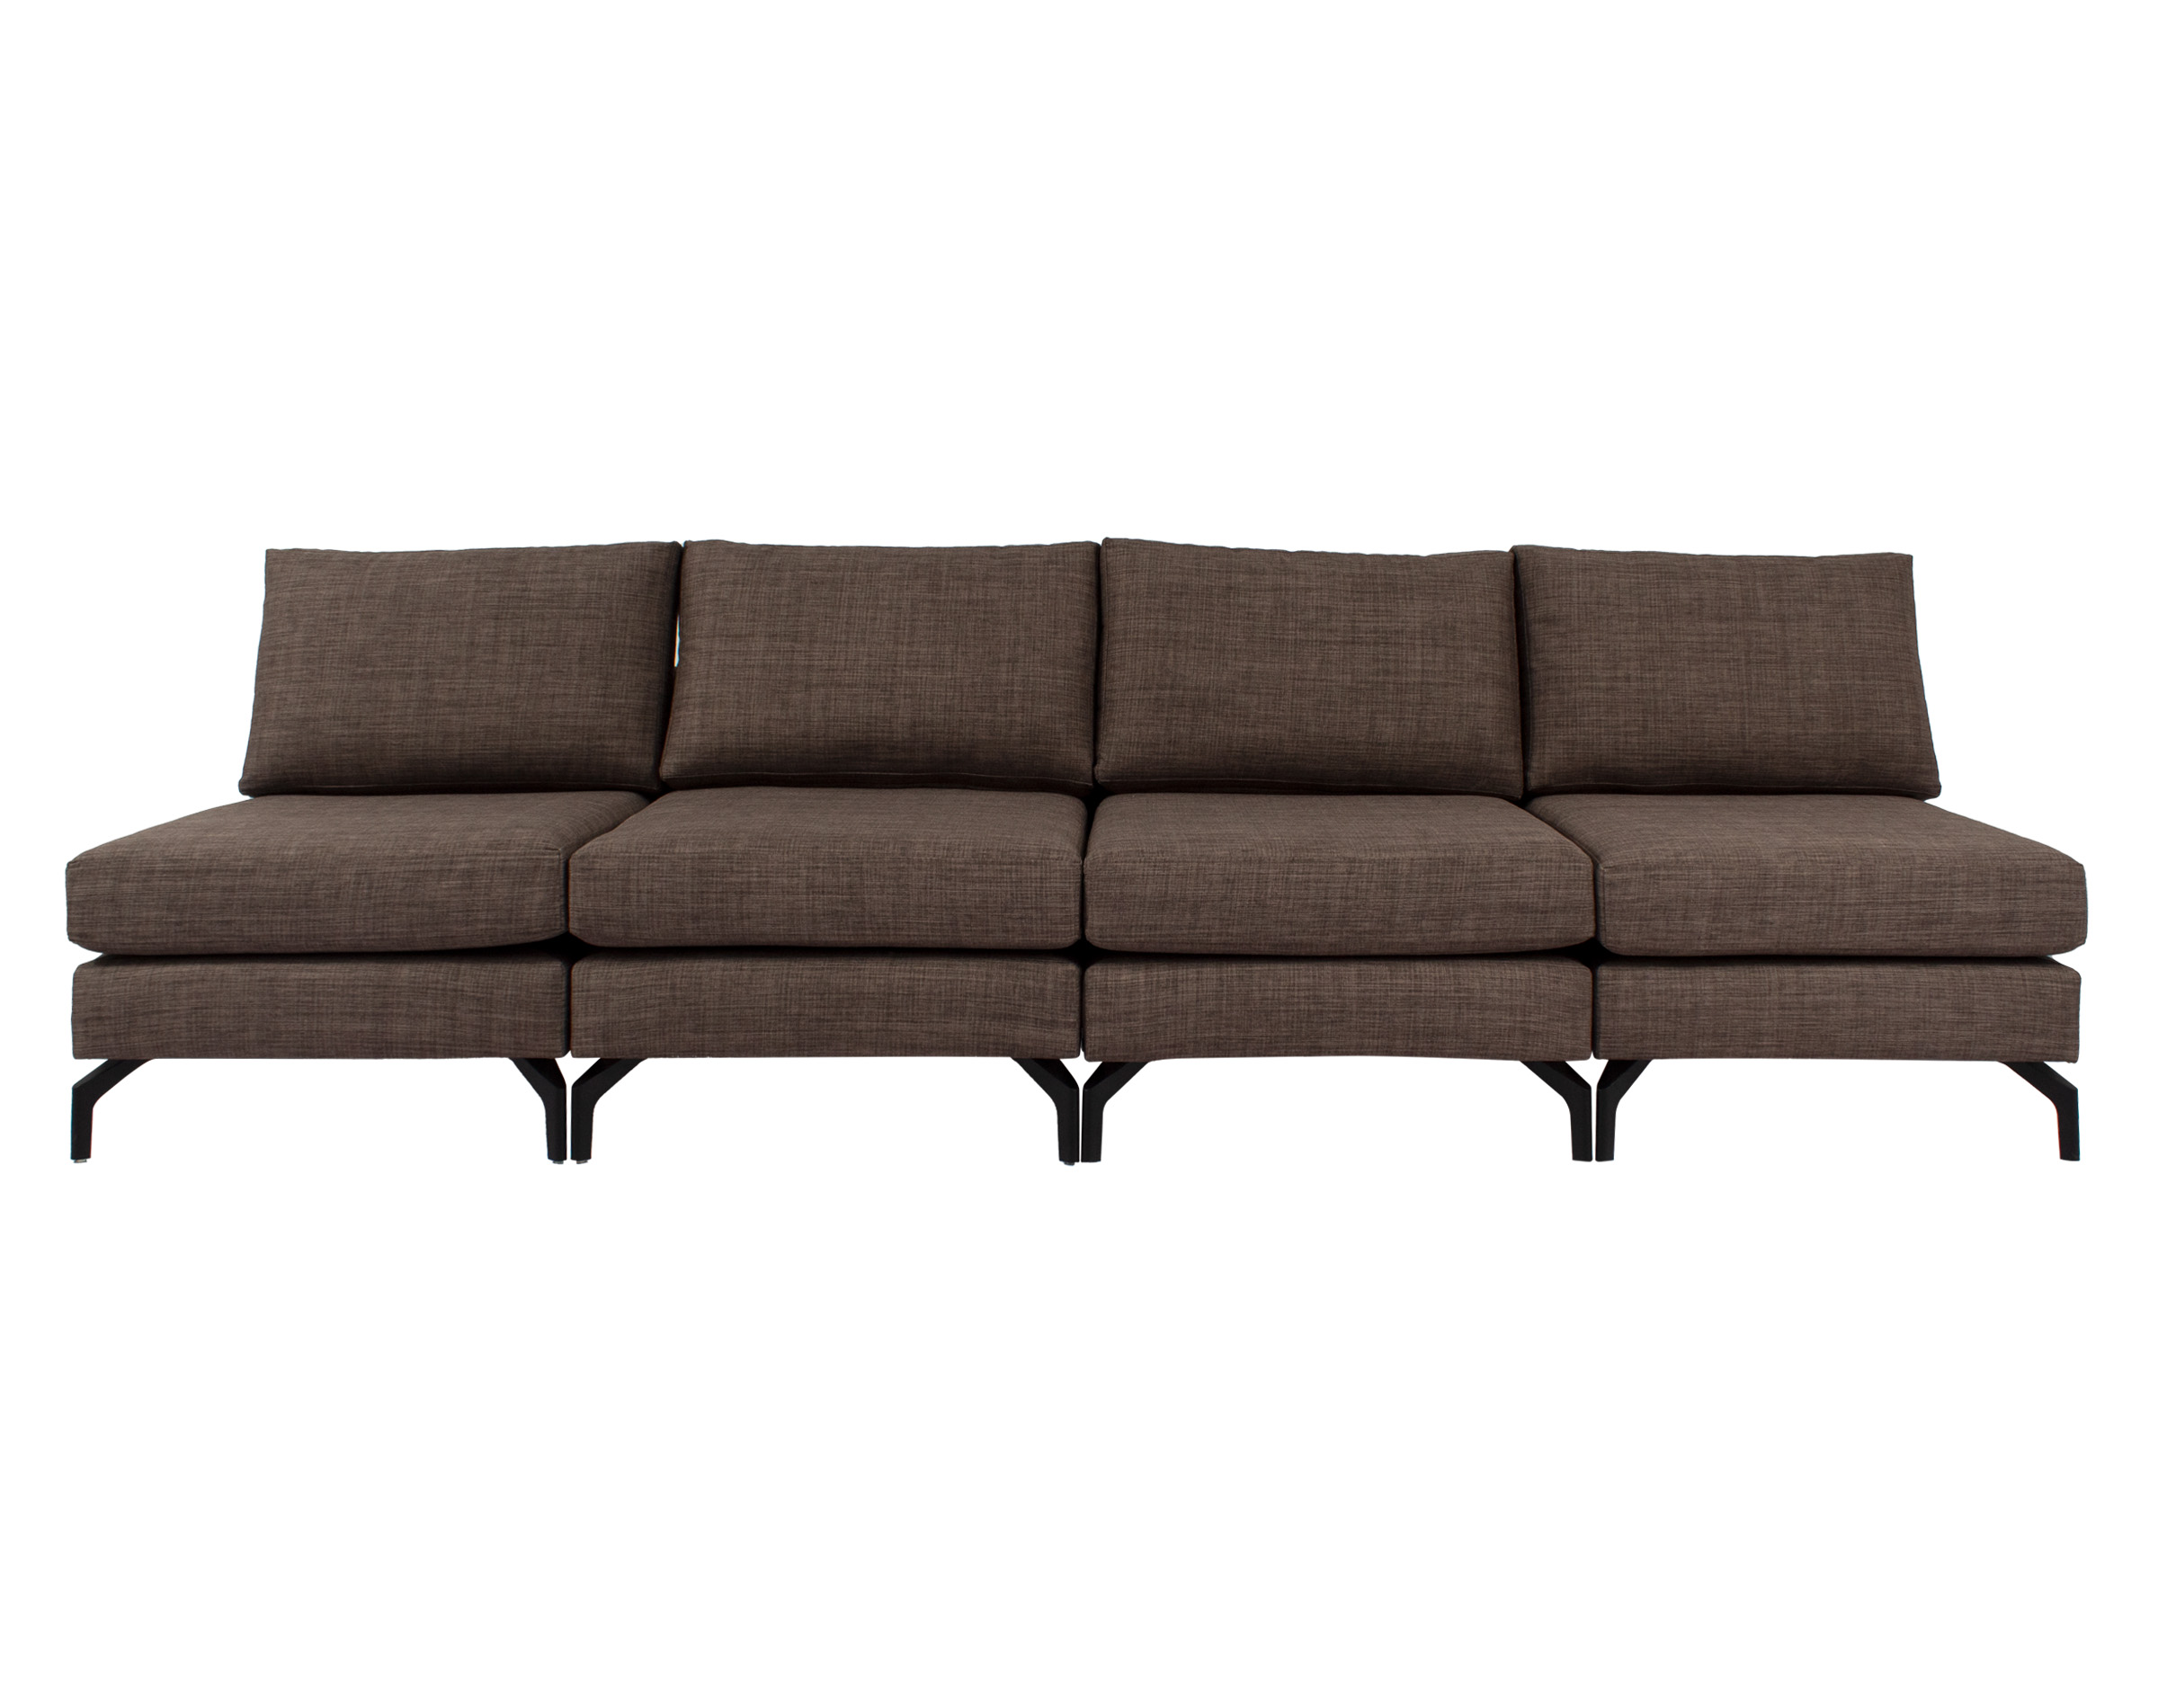 sofa 4 modulos bariloche castaÑo frente